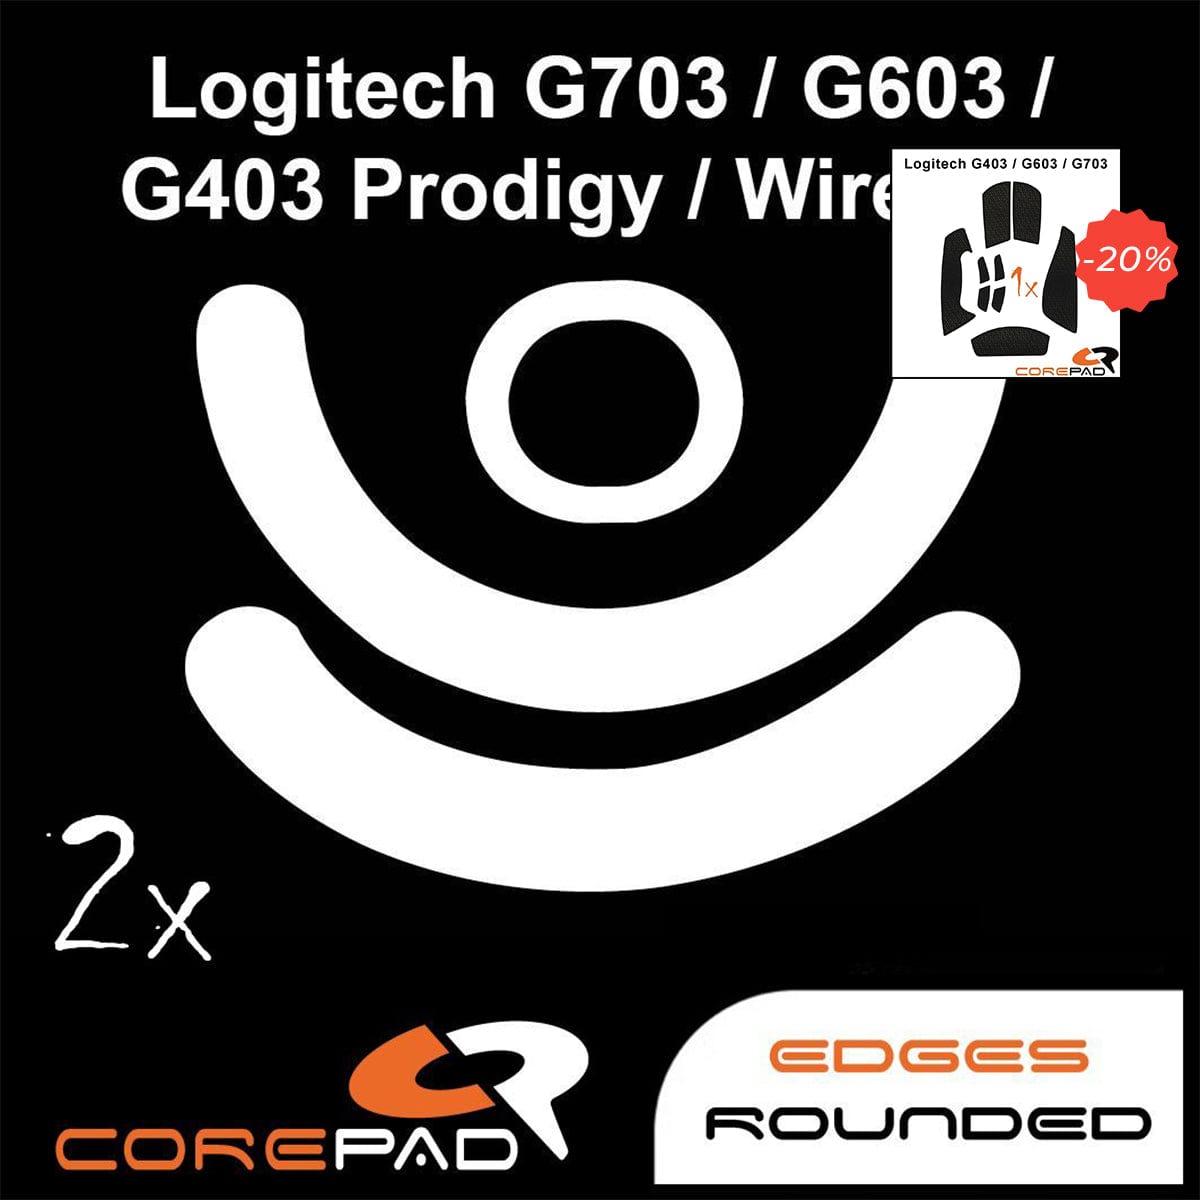 Bundle Feet + Grip tape Corepad - Logitech G703/G603/G403